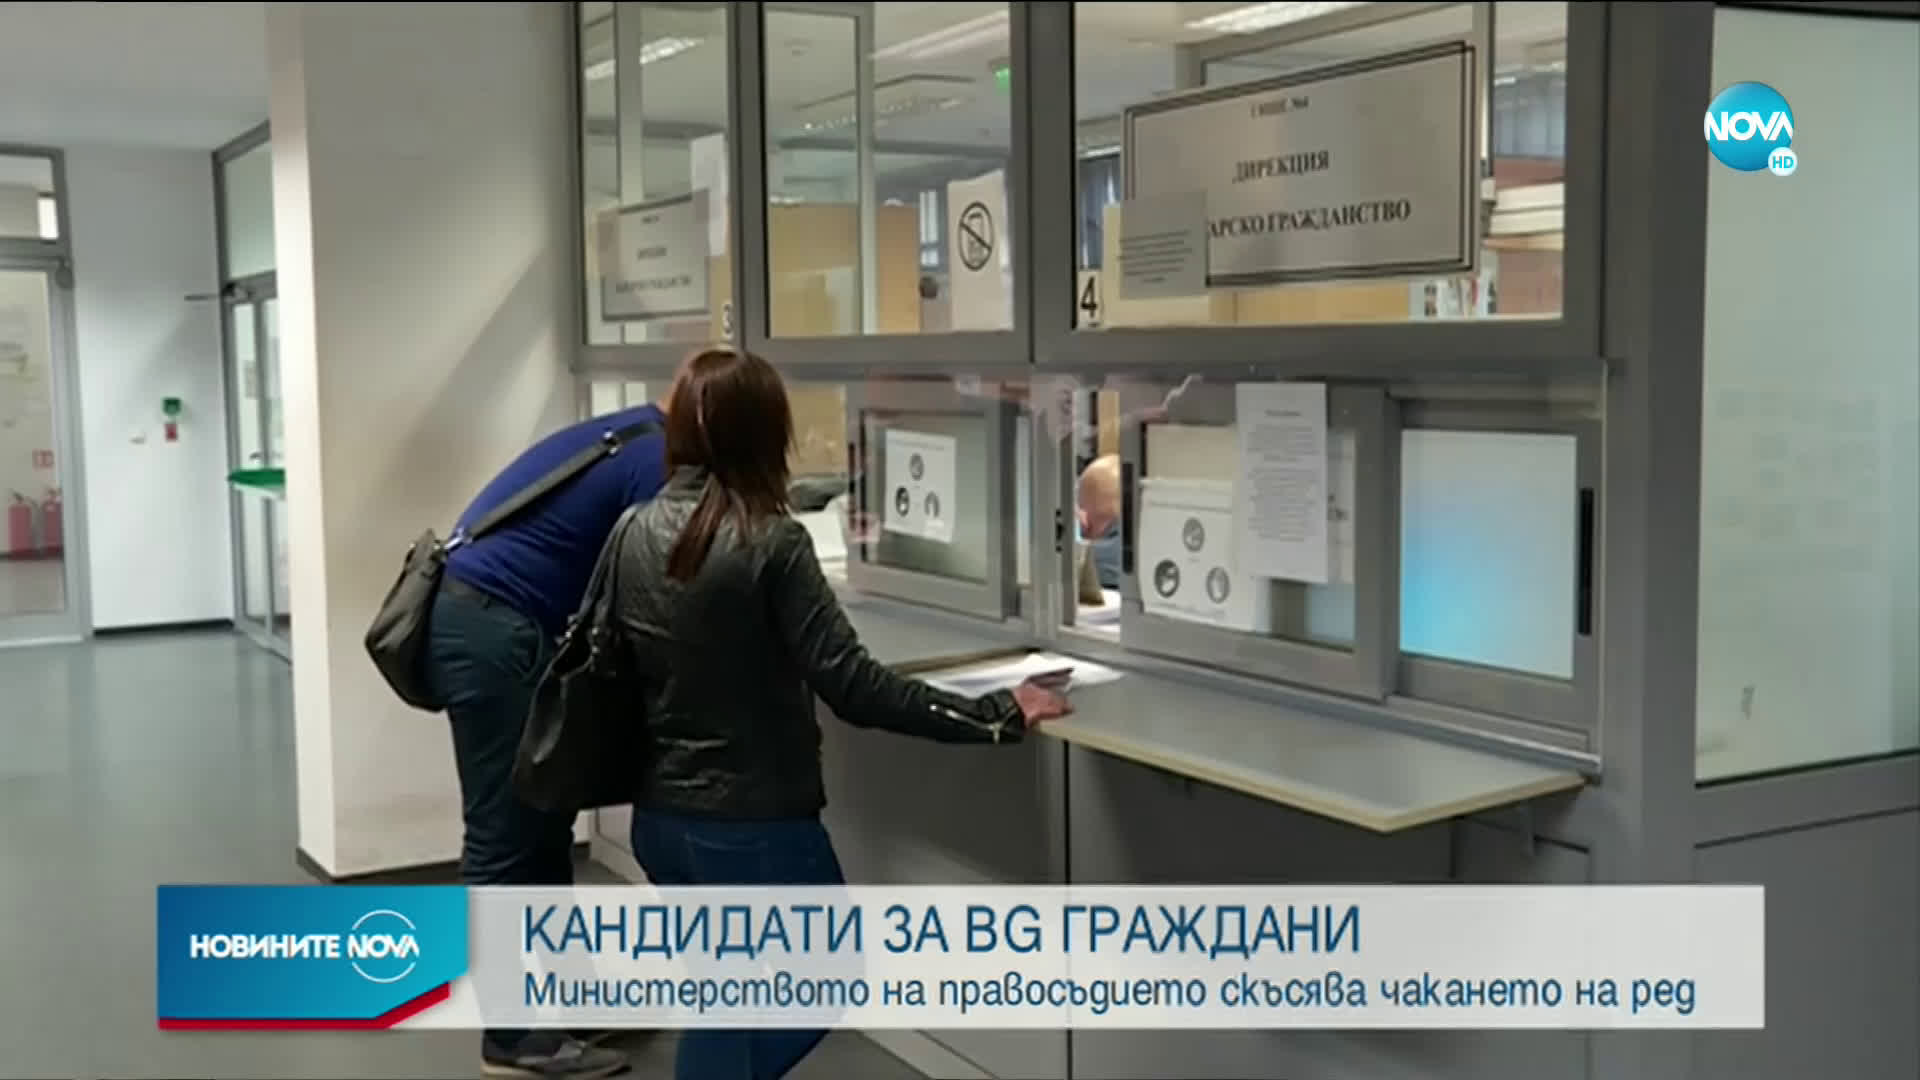 Скъсяват срока за подаване на заявления за българско гражданство